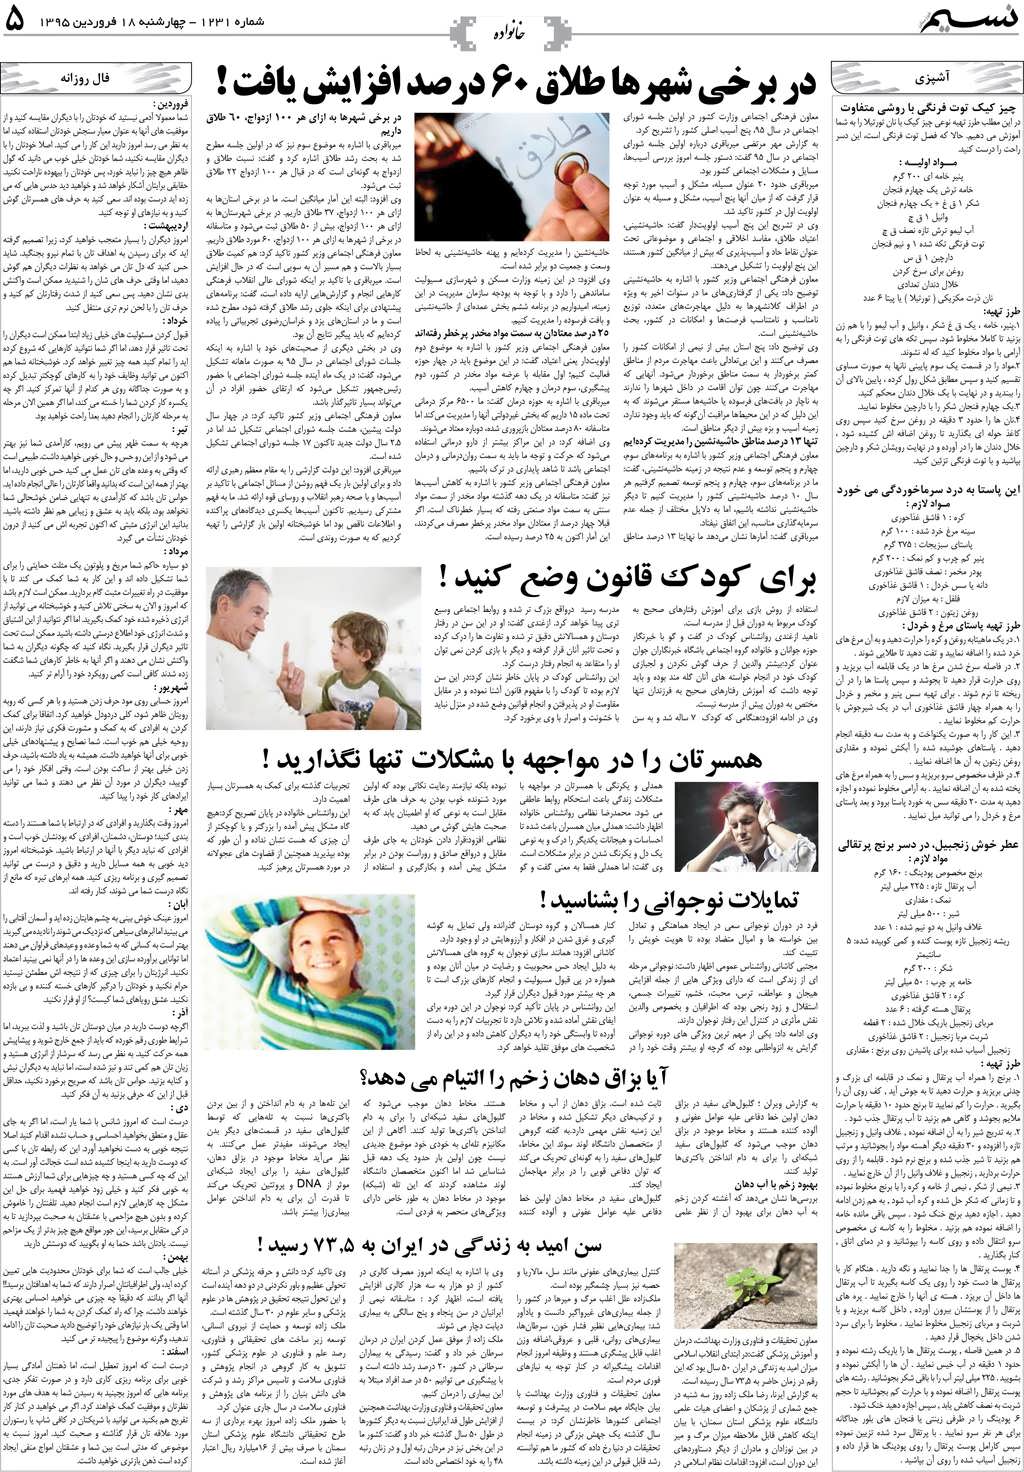 صفحه خانواده روزنامه نسیم شماره 1231